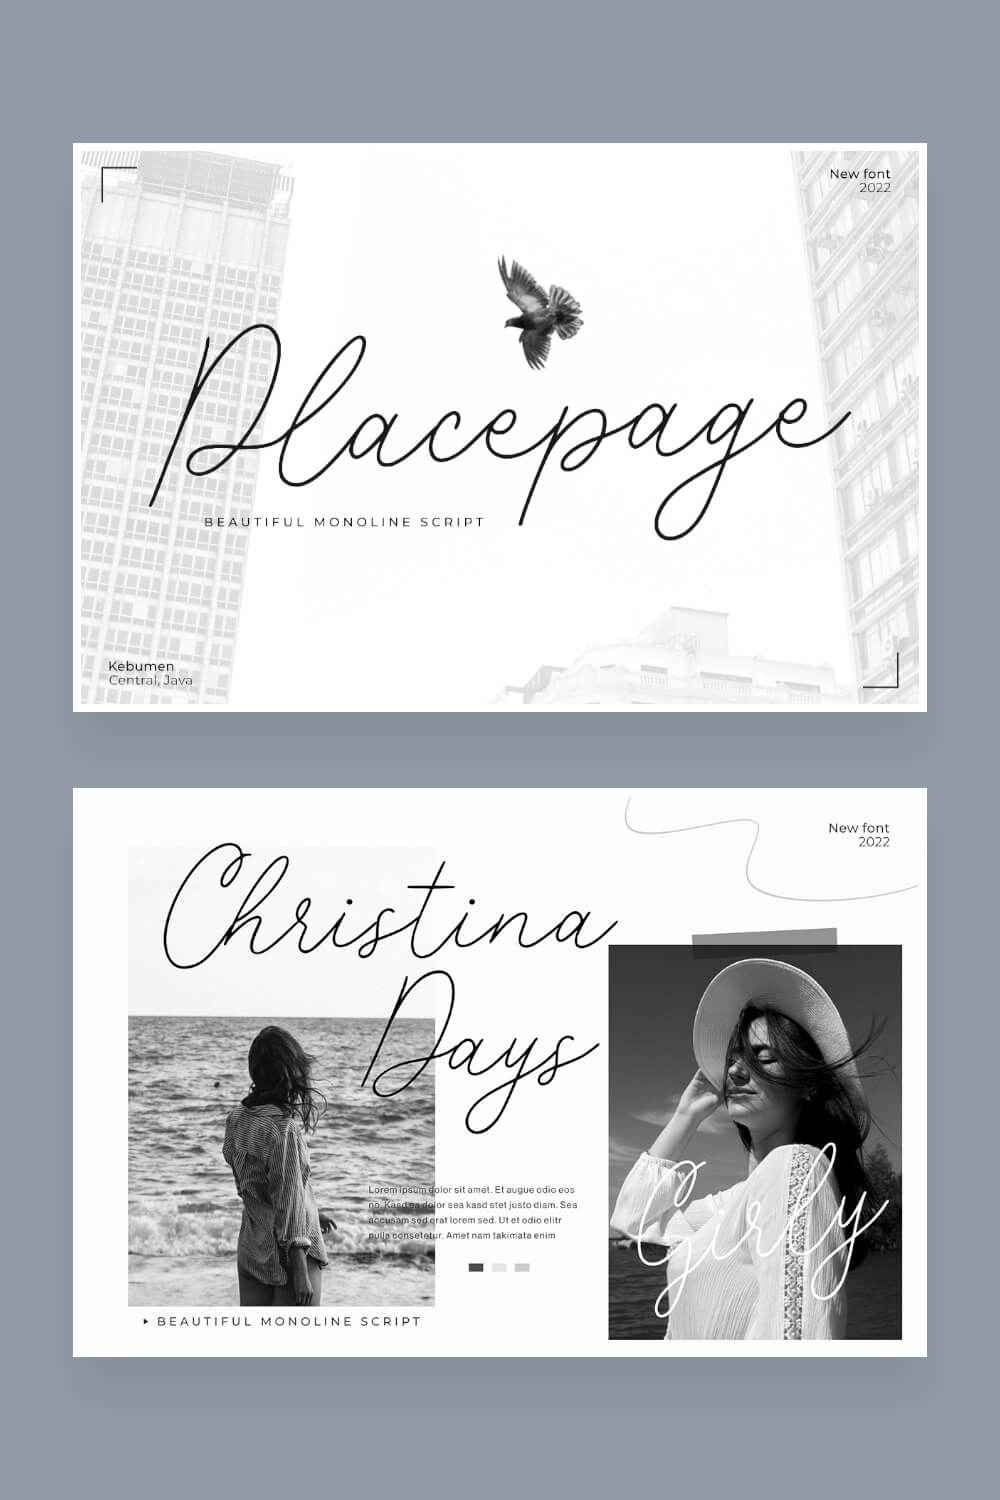 placepage a beautiful monoline script font pinterest image.